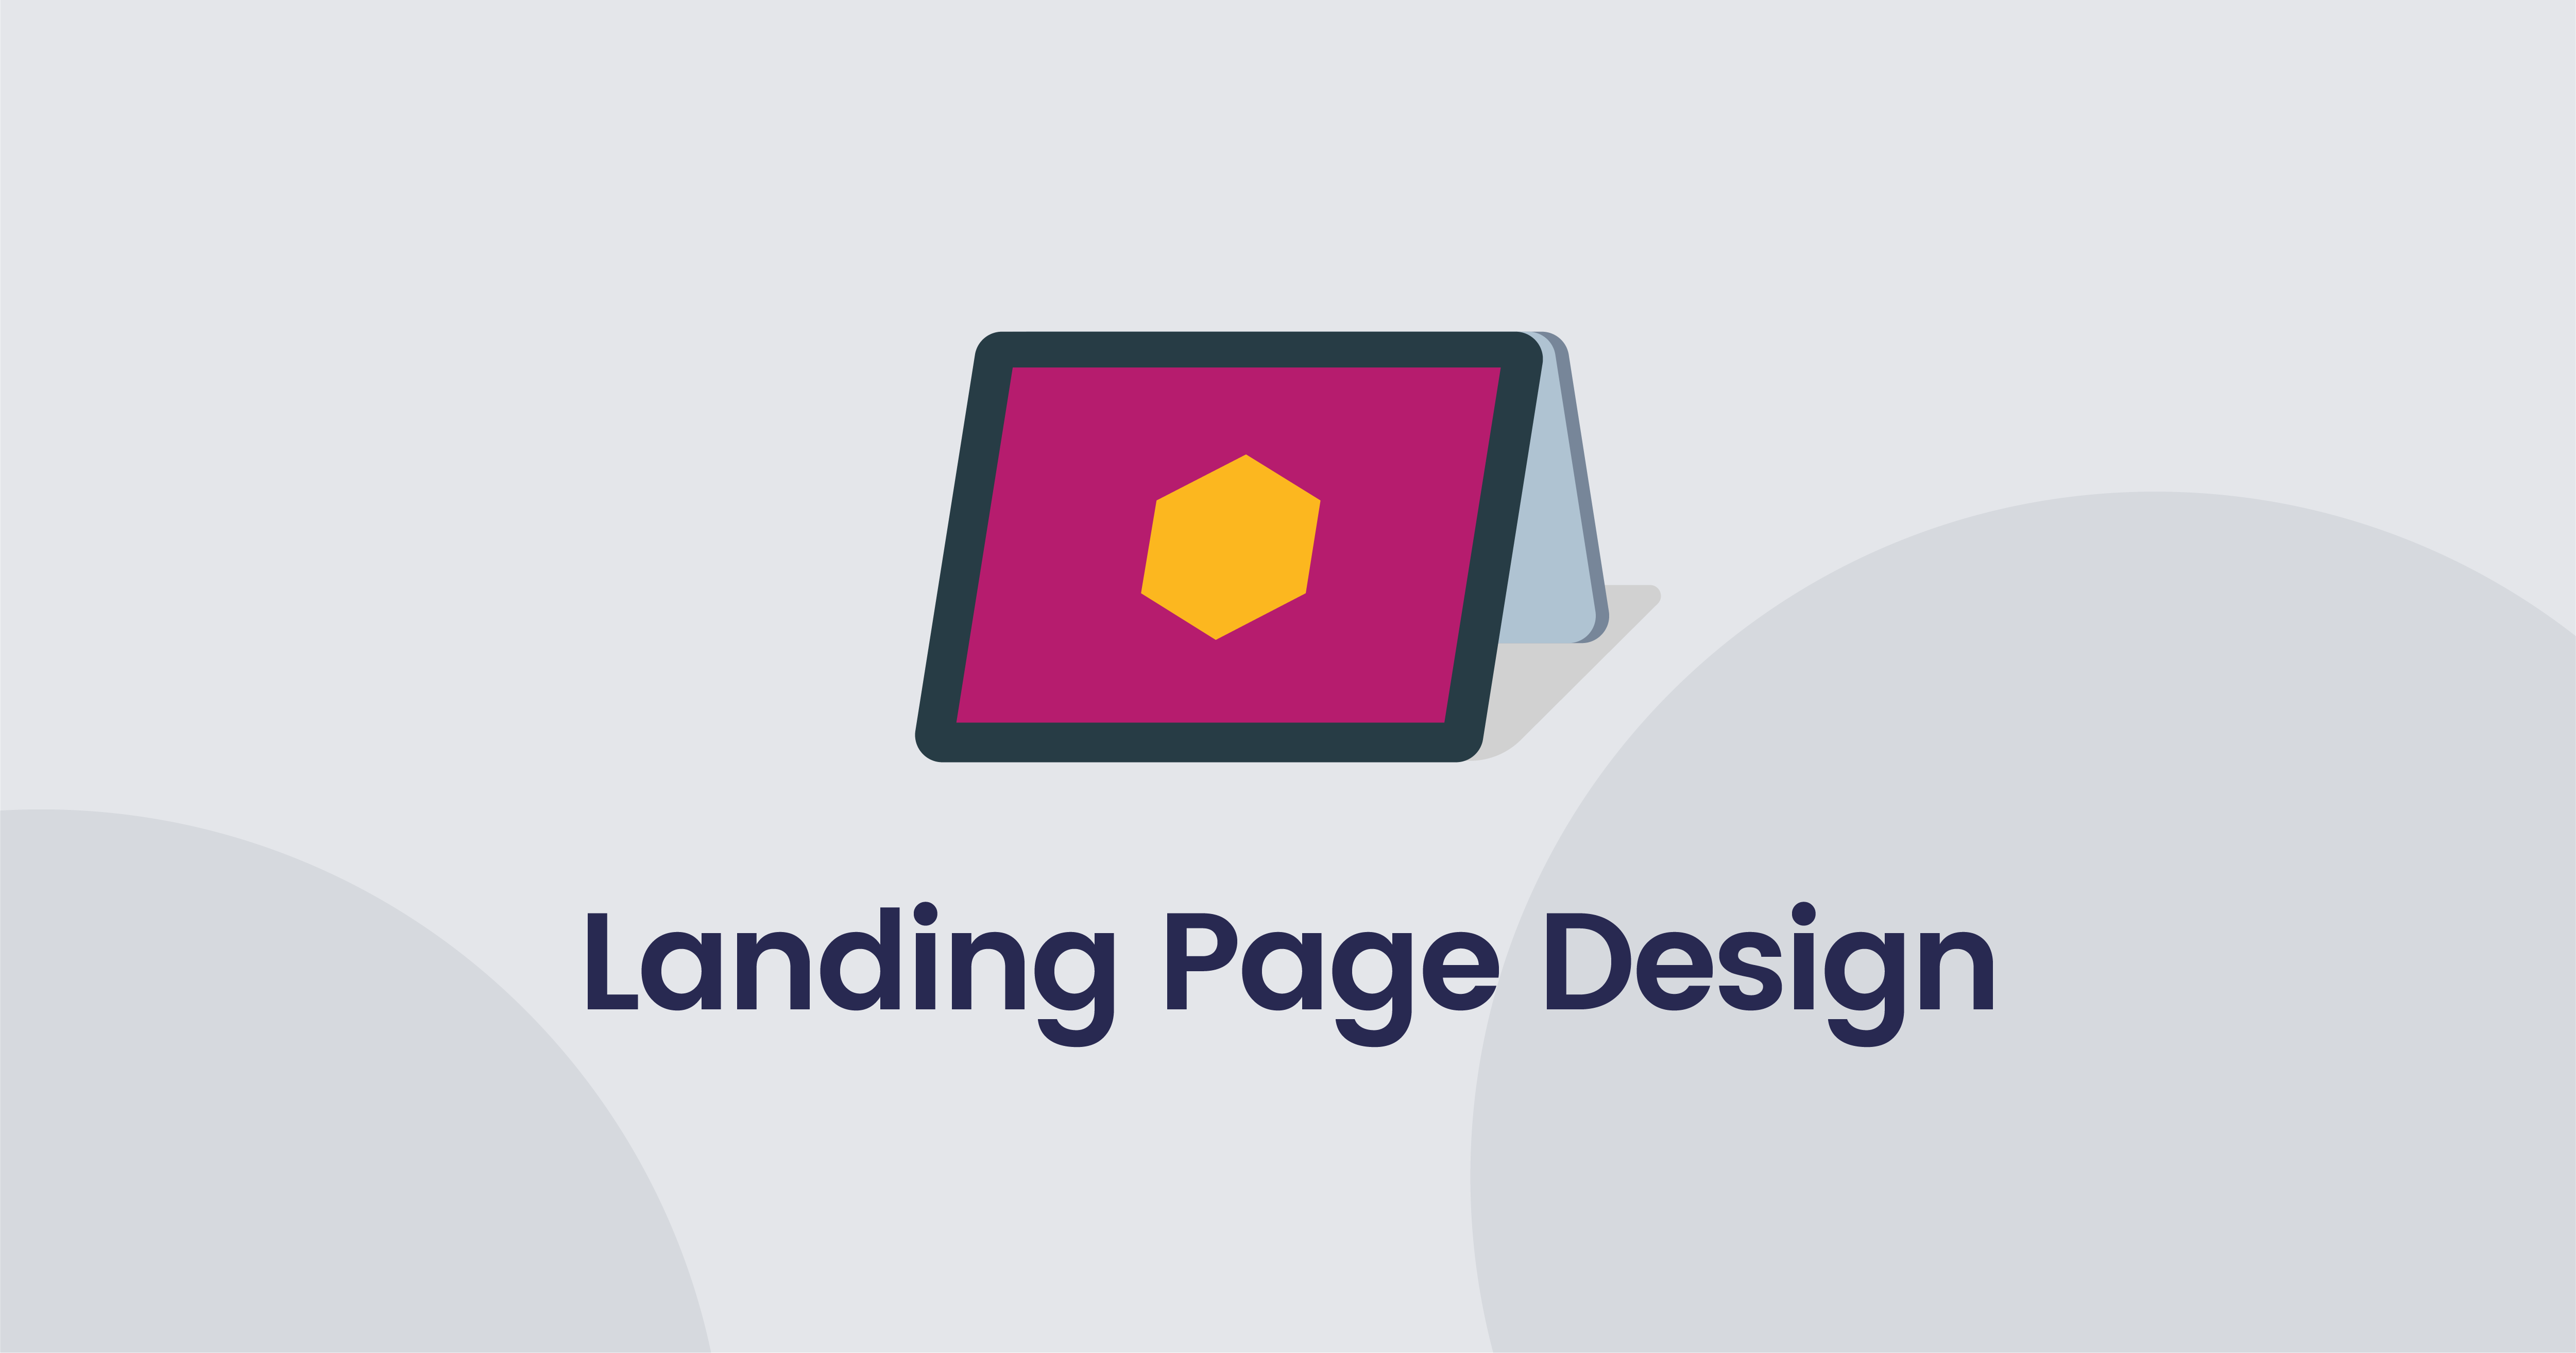 Tổng hợp các công ty thiết kế landing page theo yêu cầu